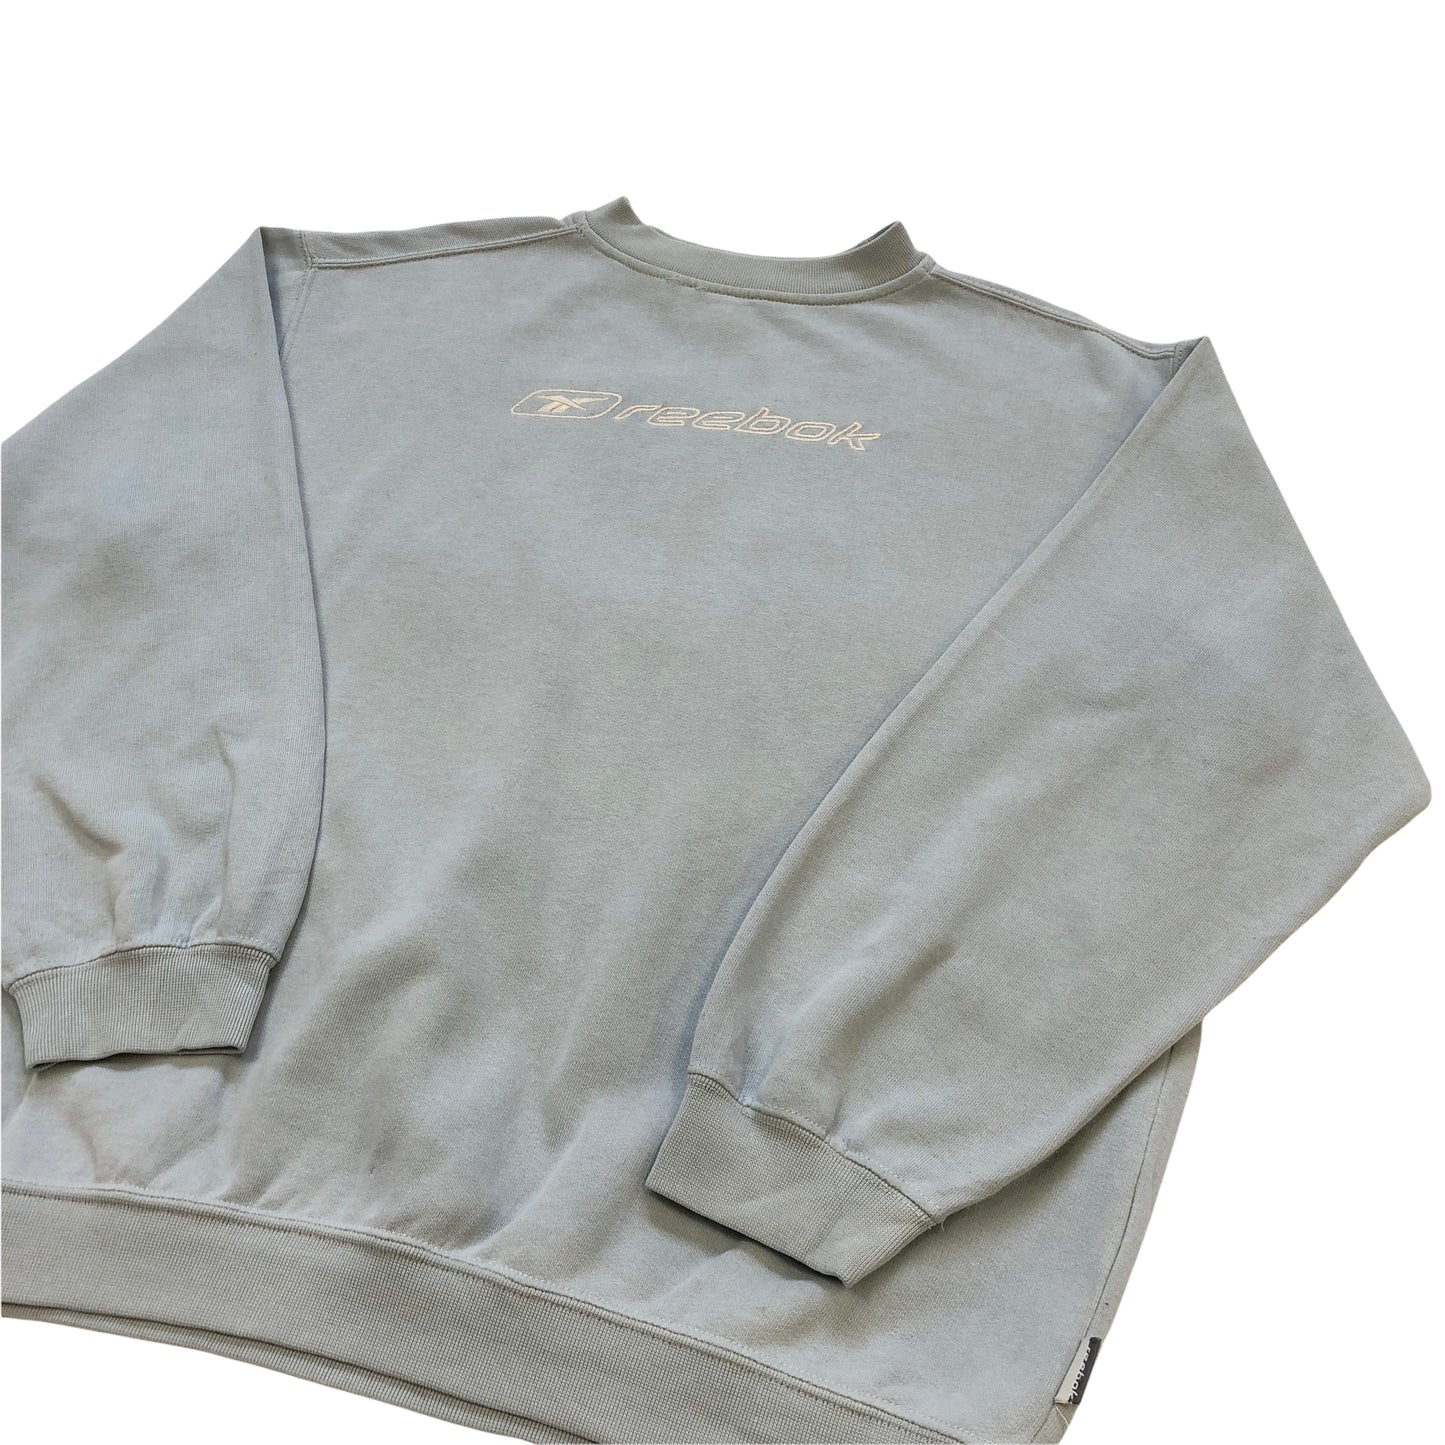 Vintage 90's Reebok Sweatshirt (Age 14)